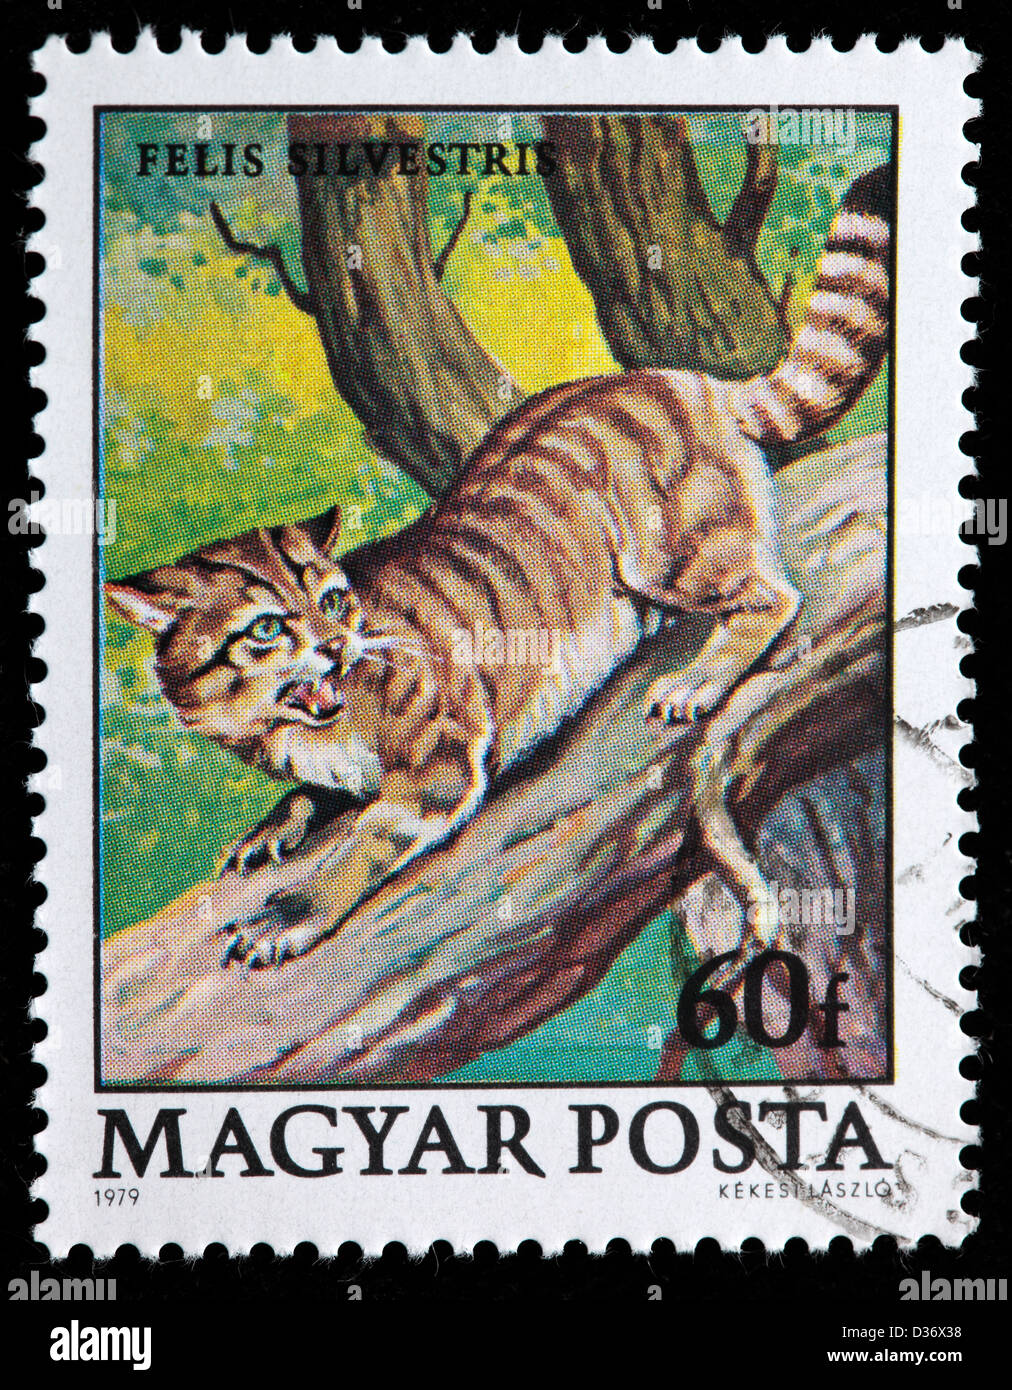 Gatto selvatico (Felis silvestris), francobollo, Ungheria, 1979 Foto Stock